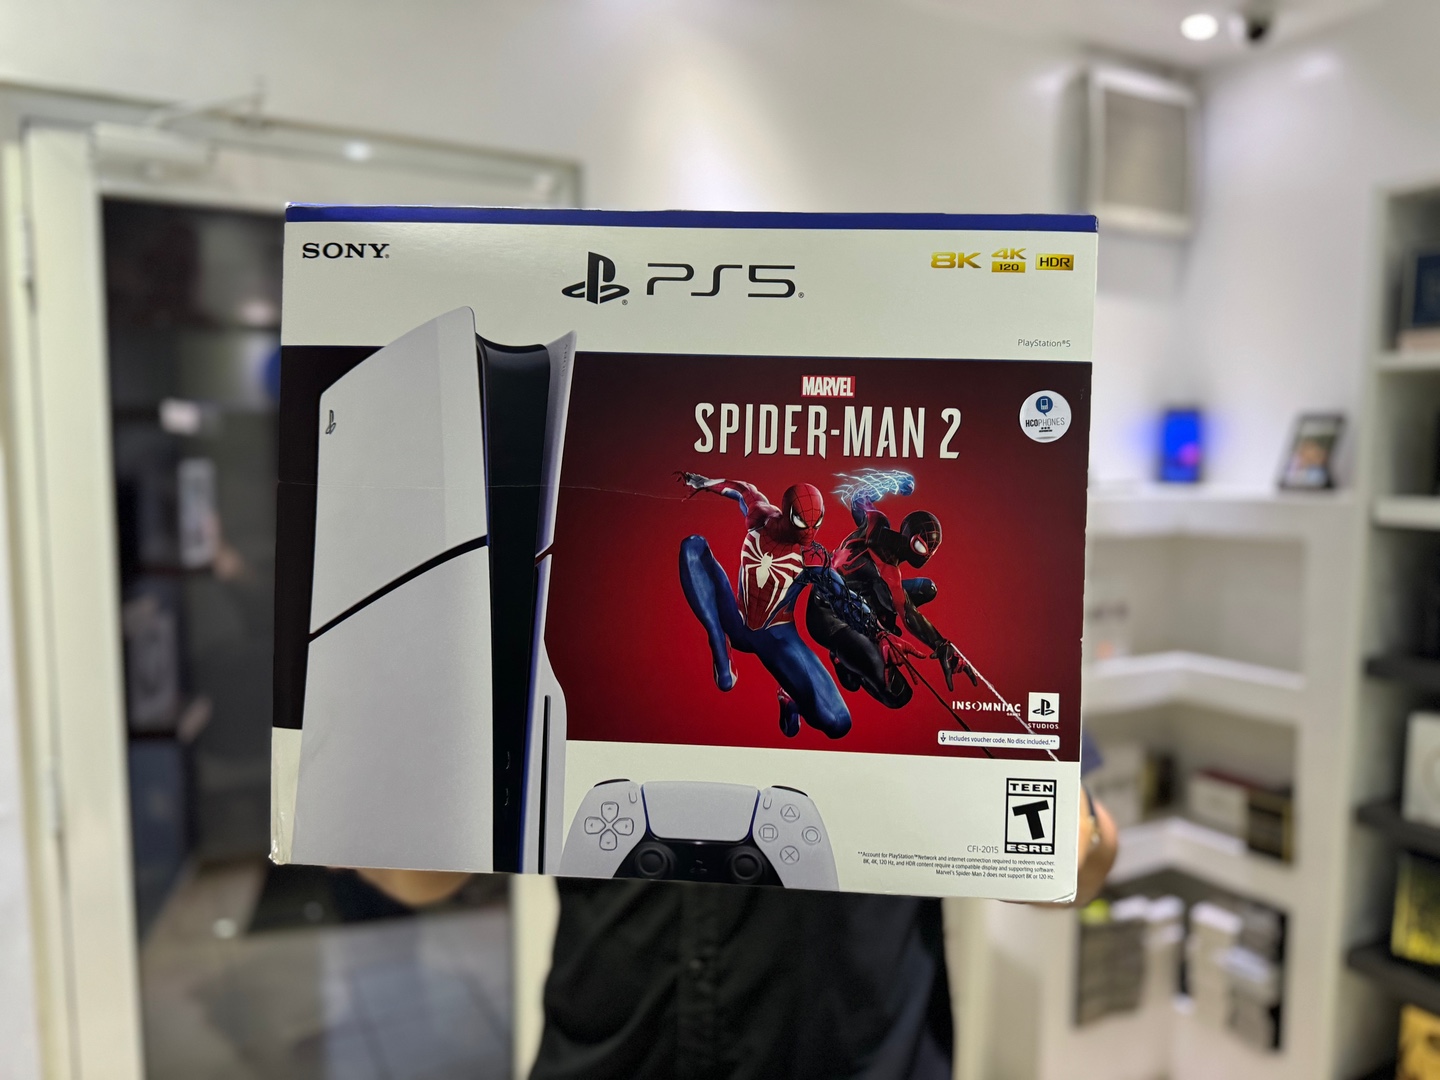 consolas y videojuegos - PlayStation5 SLIM Spider Man 2 Nuevo Sellado Version Disco,$ 36,400 NEG 0